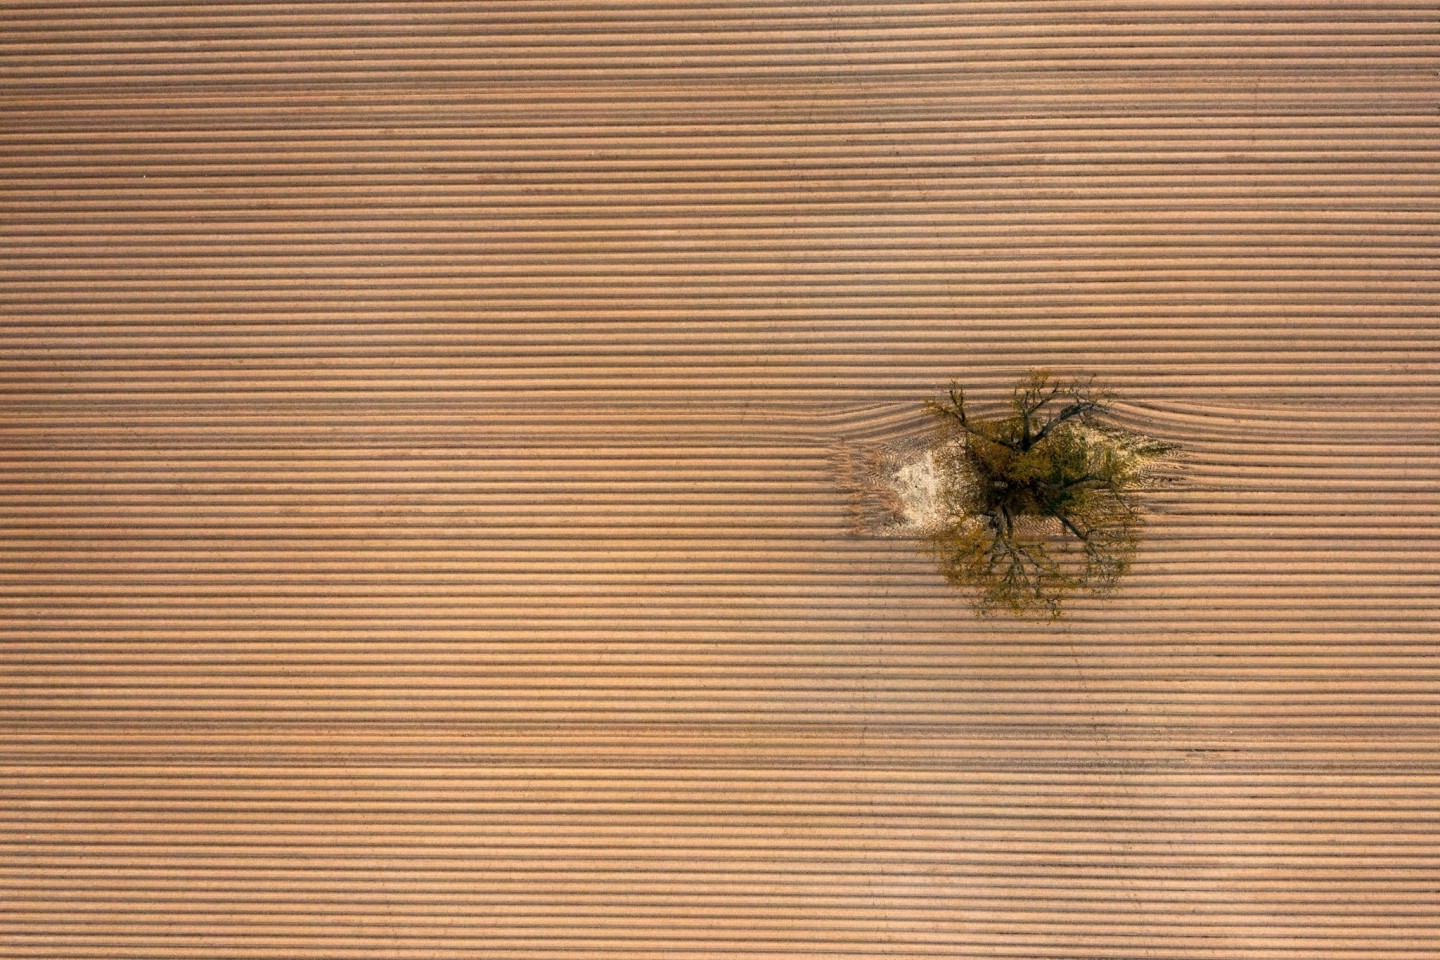 Ein einziger Baum steht inmitten eines frisch angelegten, riesigen Kartoffelackers am Rande der Wetterau.